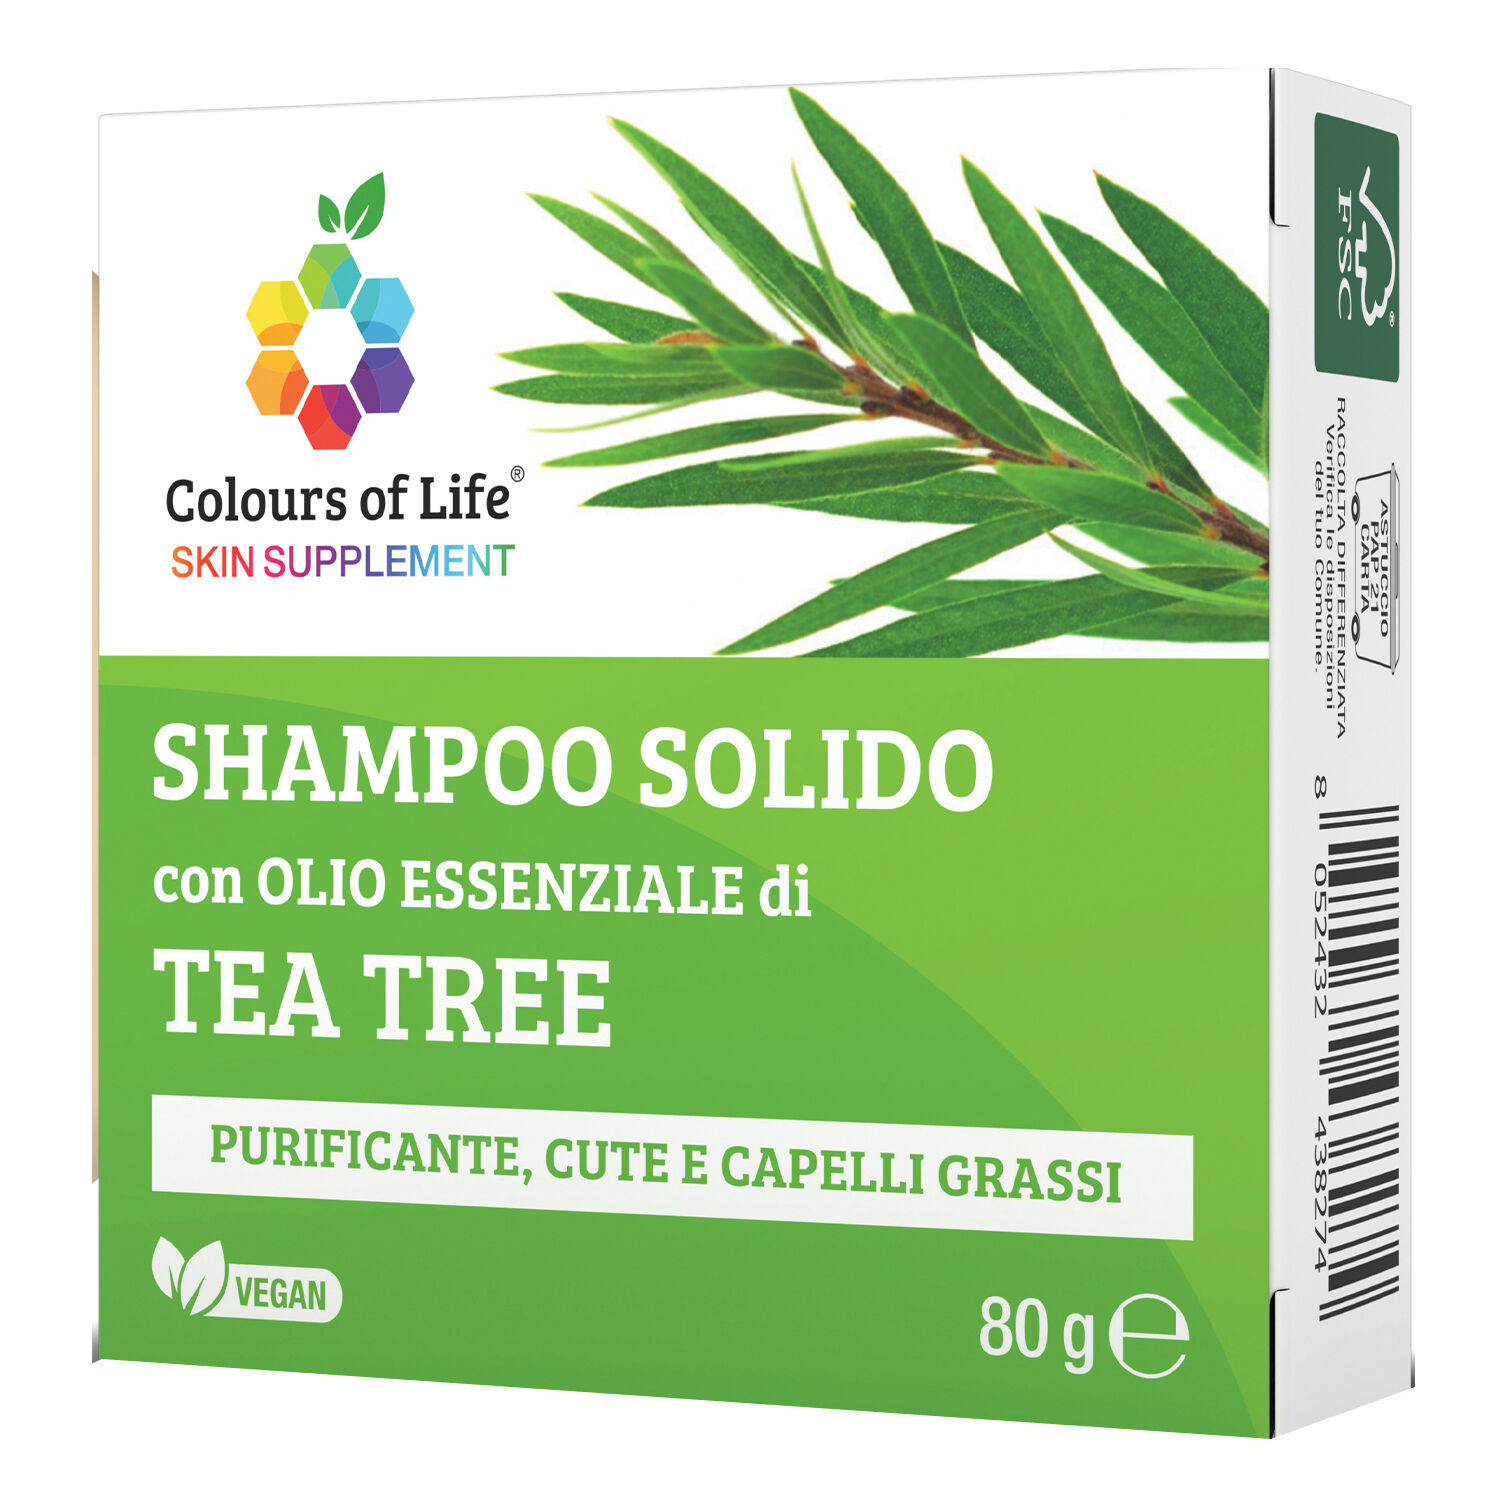 optima tea tree shampoo solido 80 g colours of life